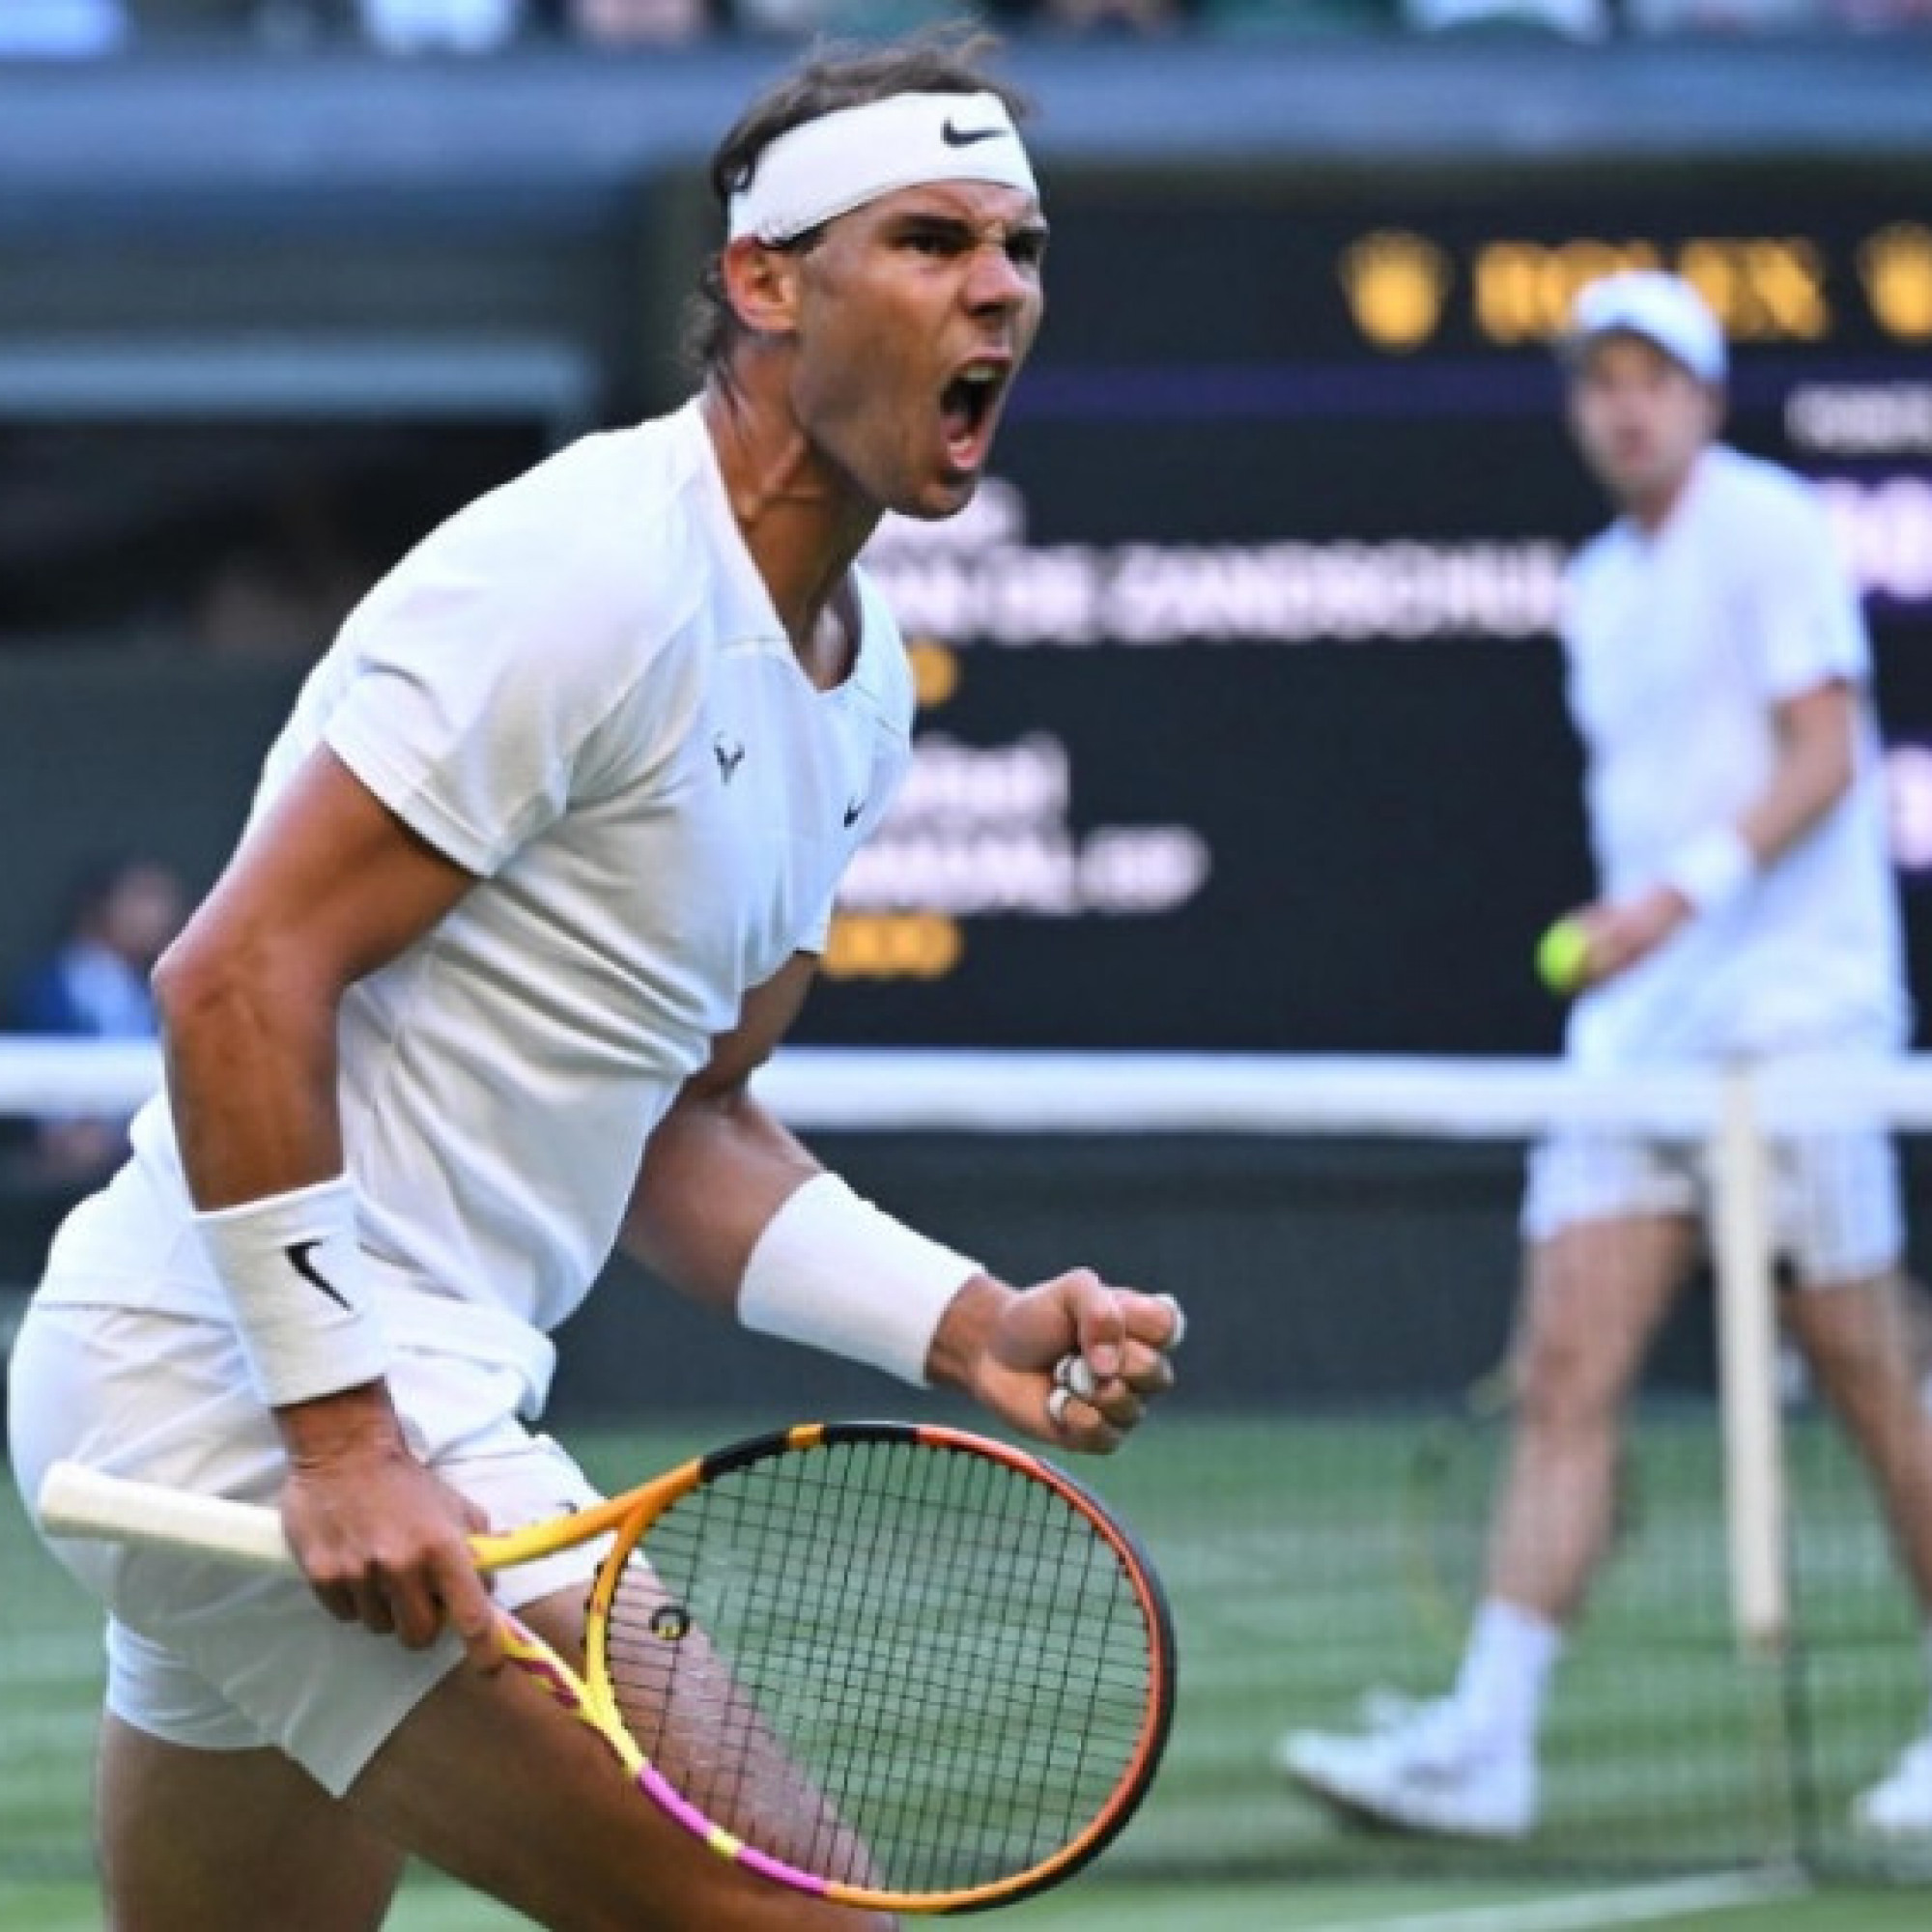  - Video tennis Zandschulp - Nadal: Khoảnh khắc lơ là, nín thở loạt tie-break (Vòng 4 Wimbledon)